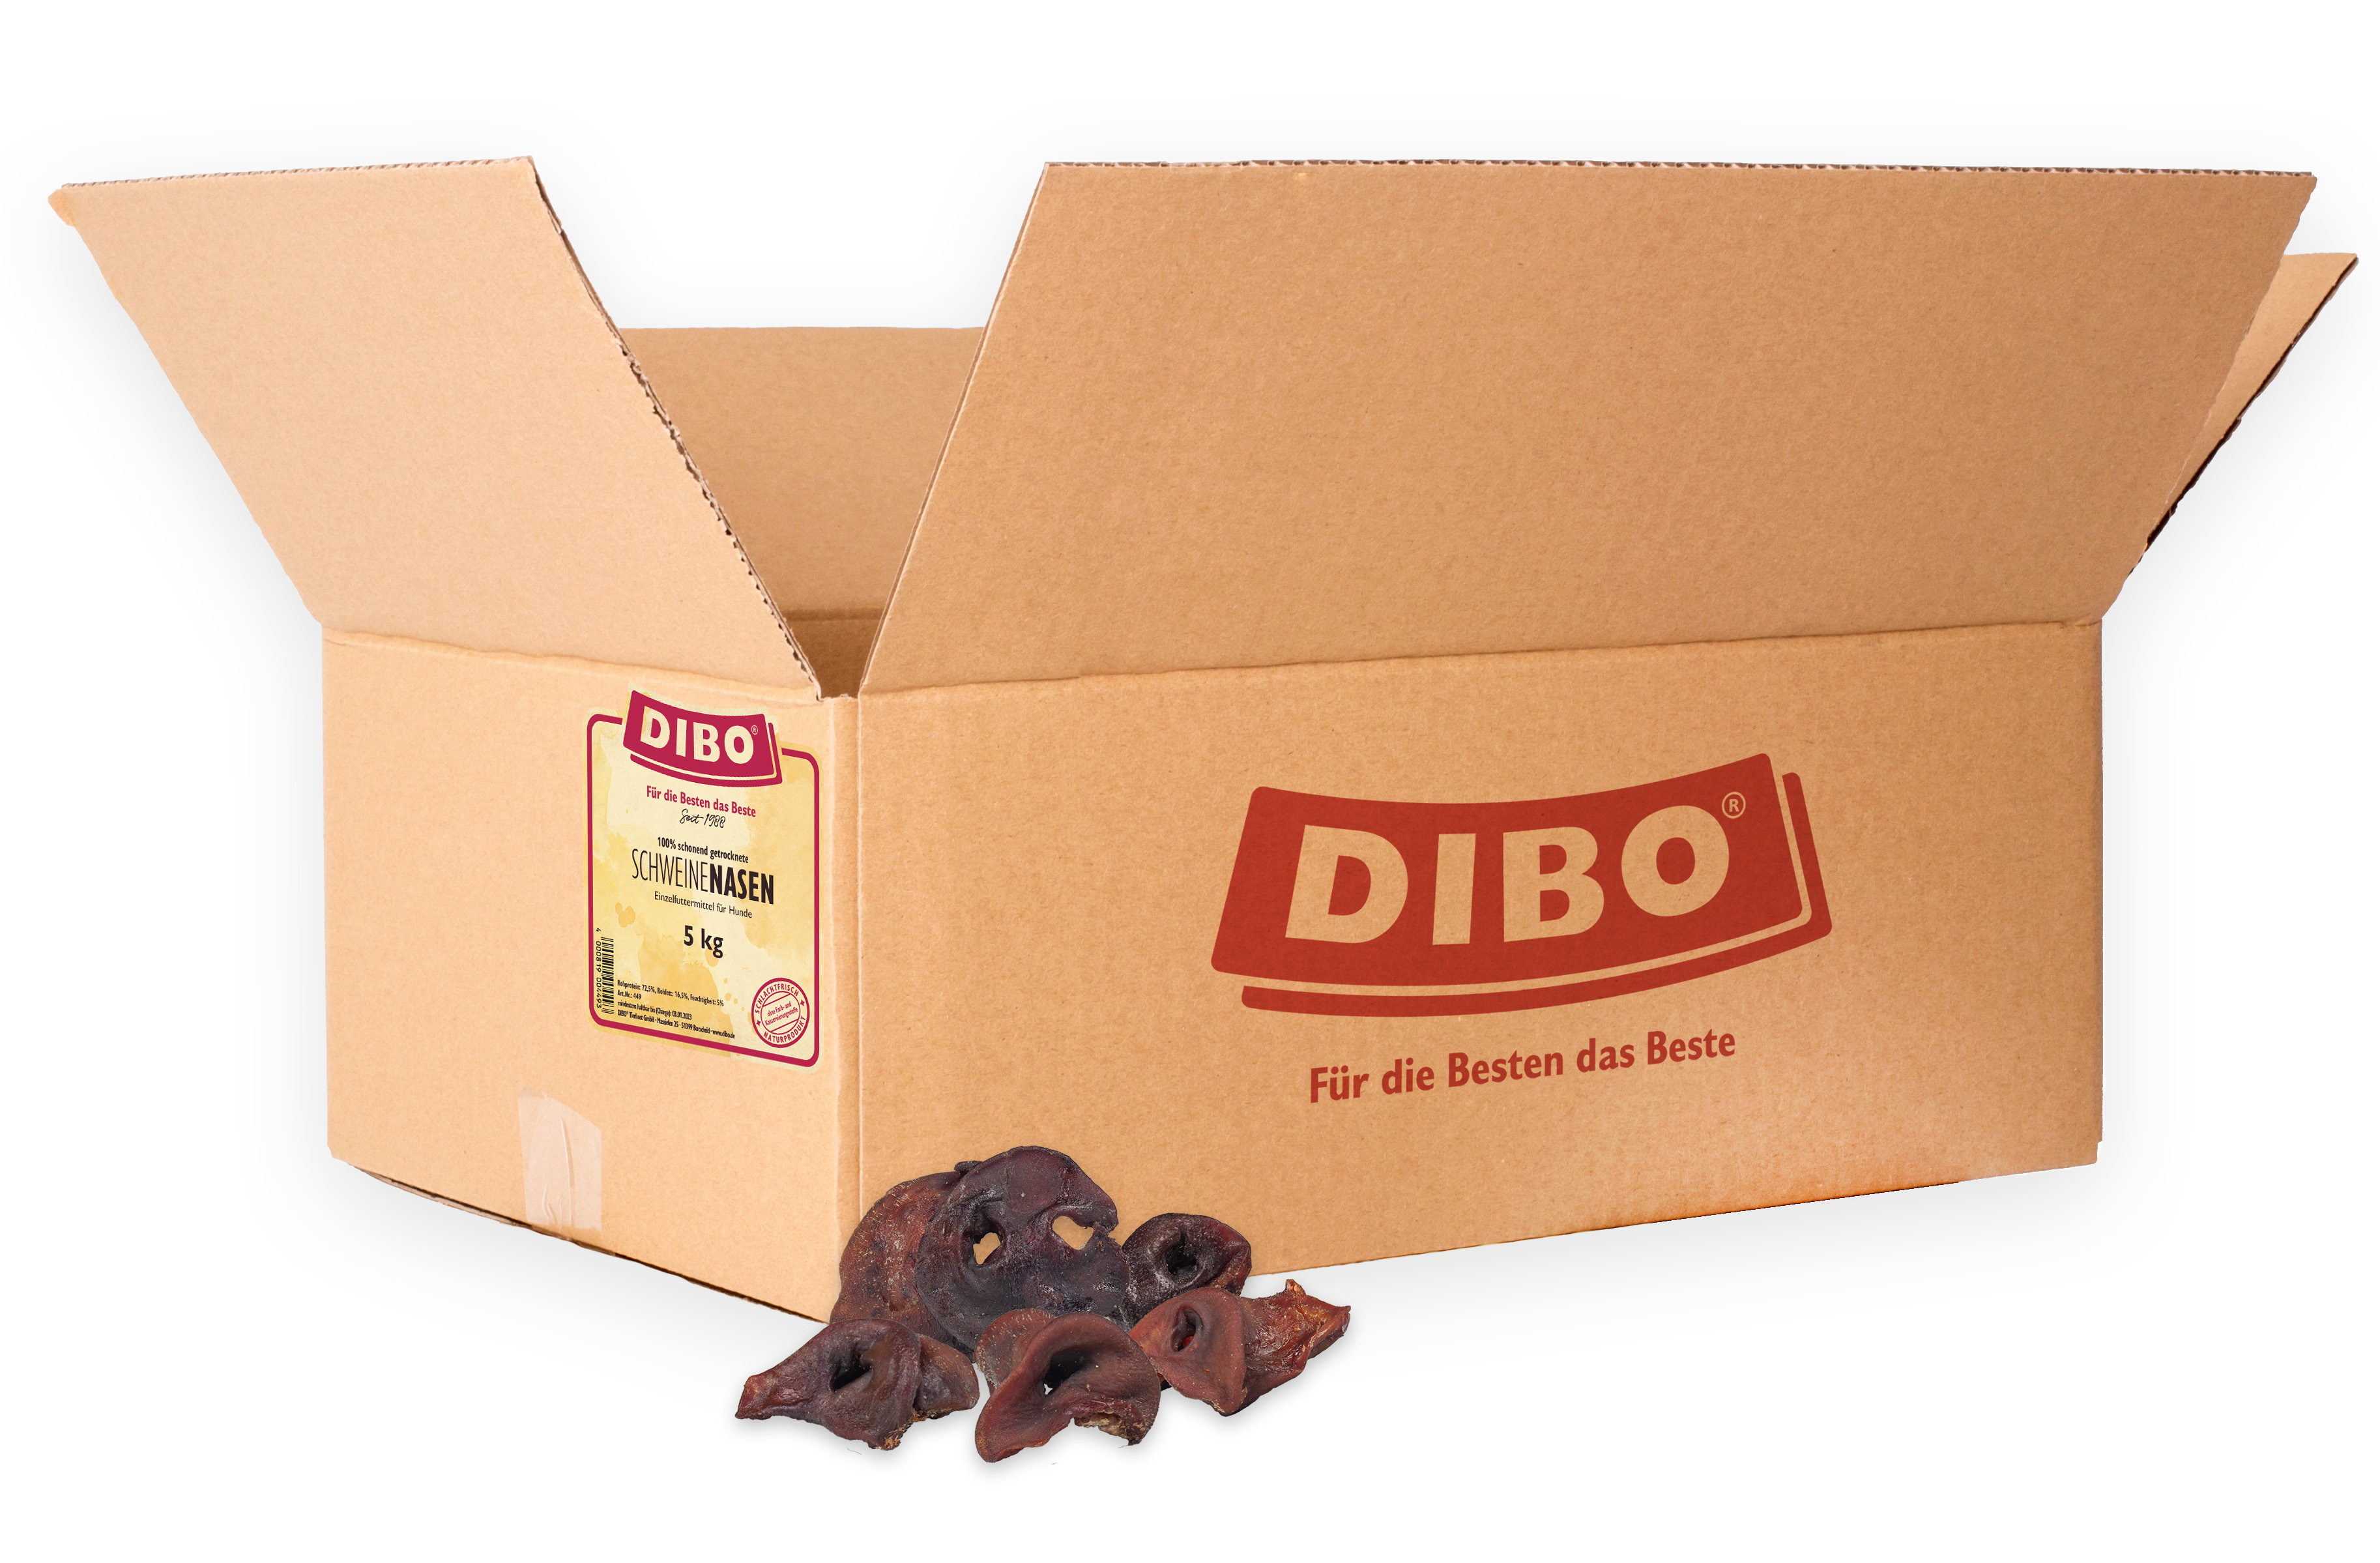 DIBO Schweine-Nasen, 5kg-Karton